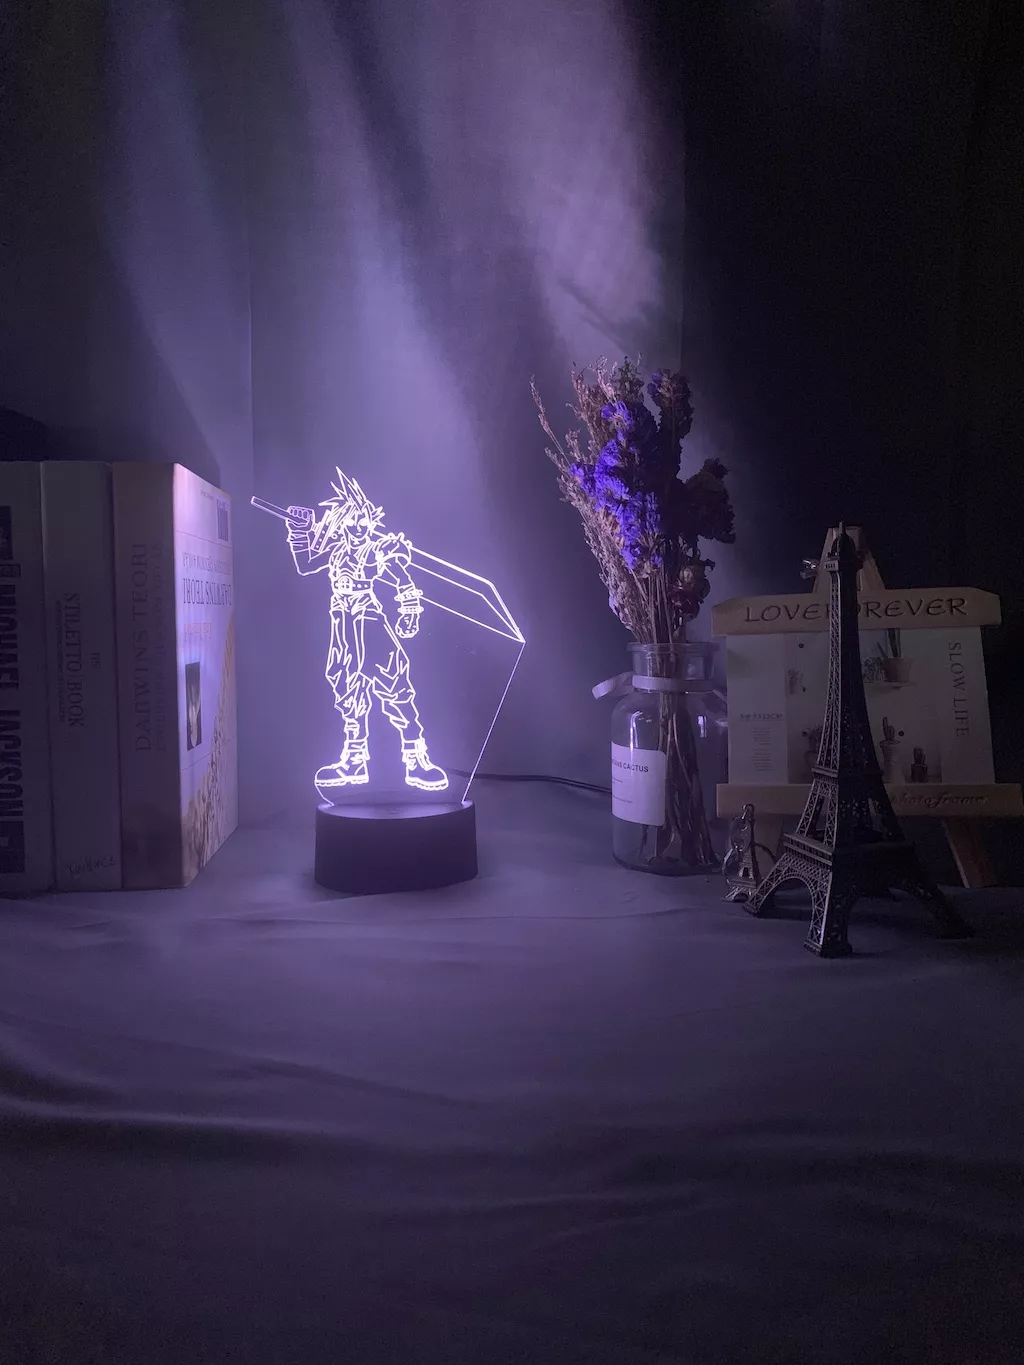 776100329 1 Luminária Final Fantasy luz noturna em led 3d, crianças, luz noturna colorida para decoração de quarto, usb, lâmpada de mesa, jogo final, presente fantasia